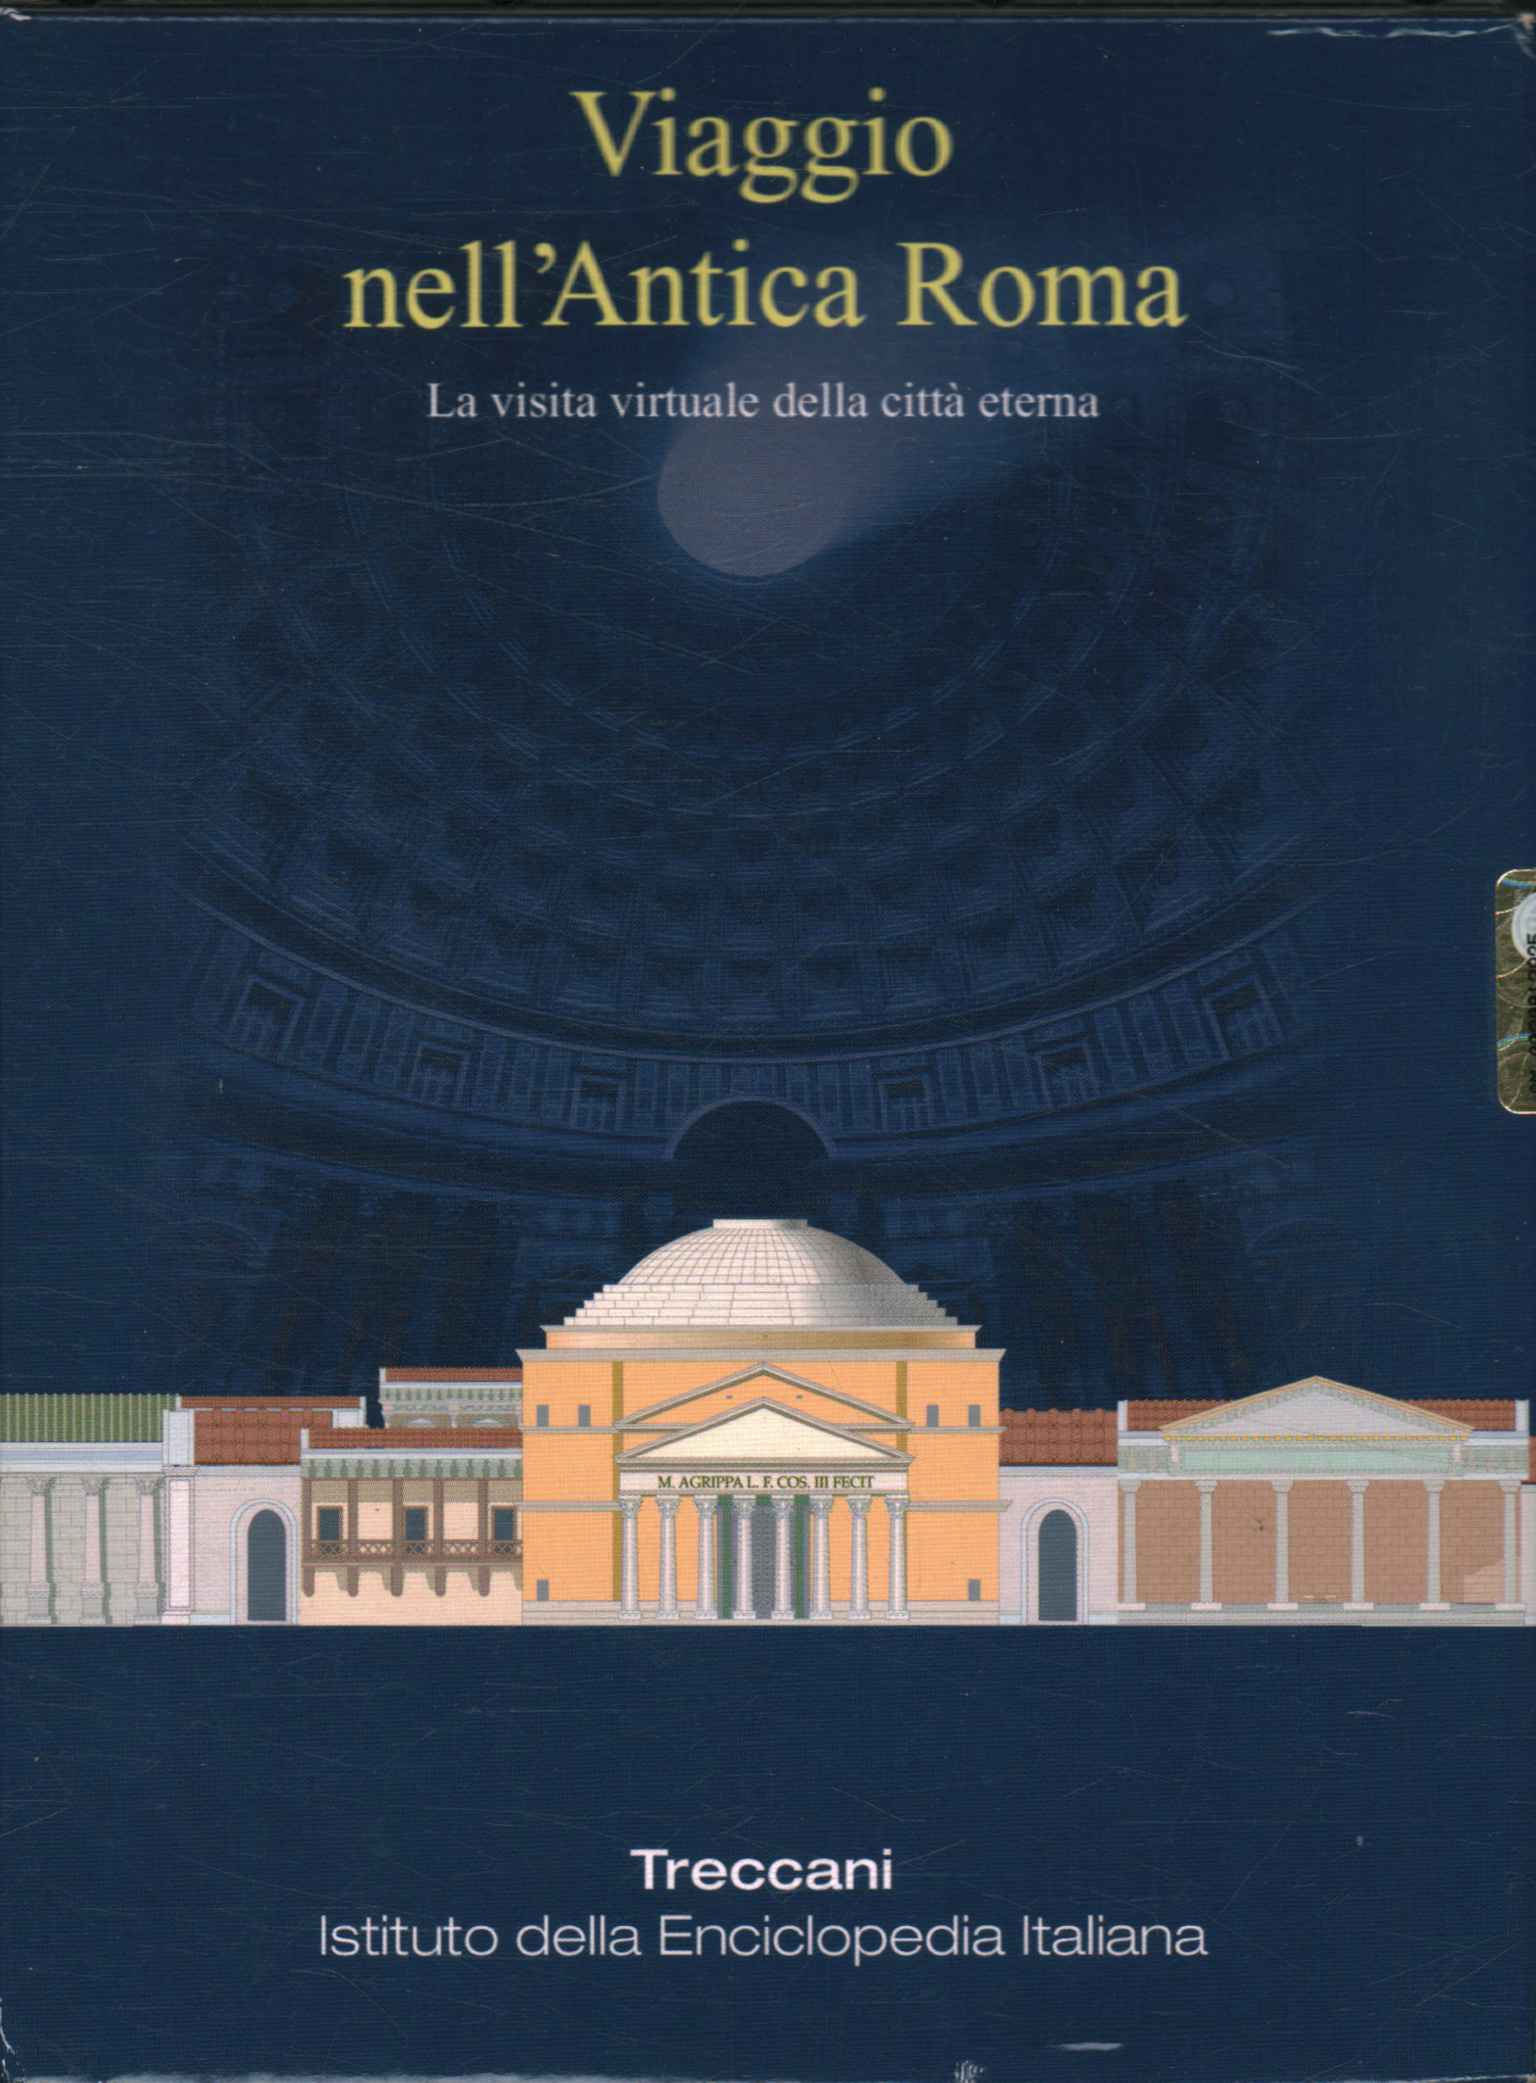 Viaje a la Antigua Roma (4 DVD